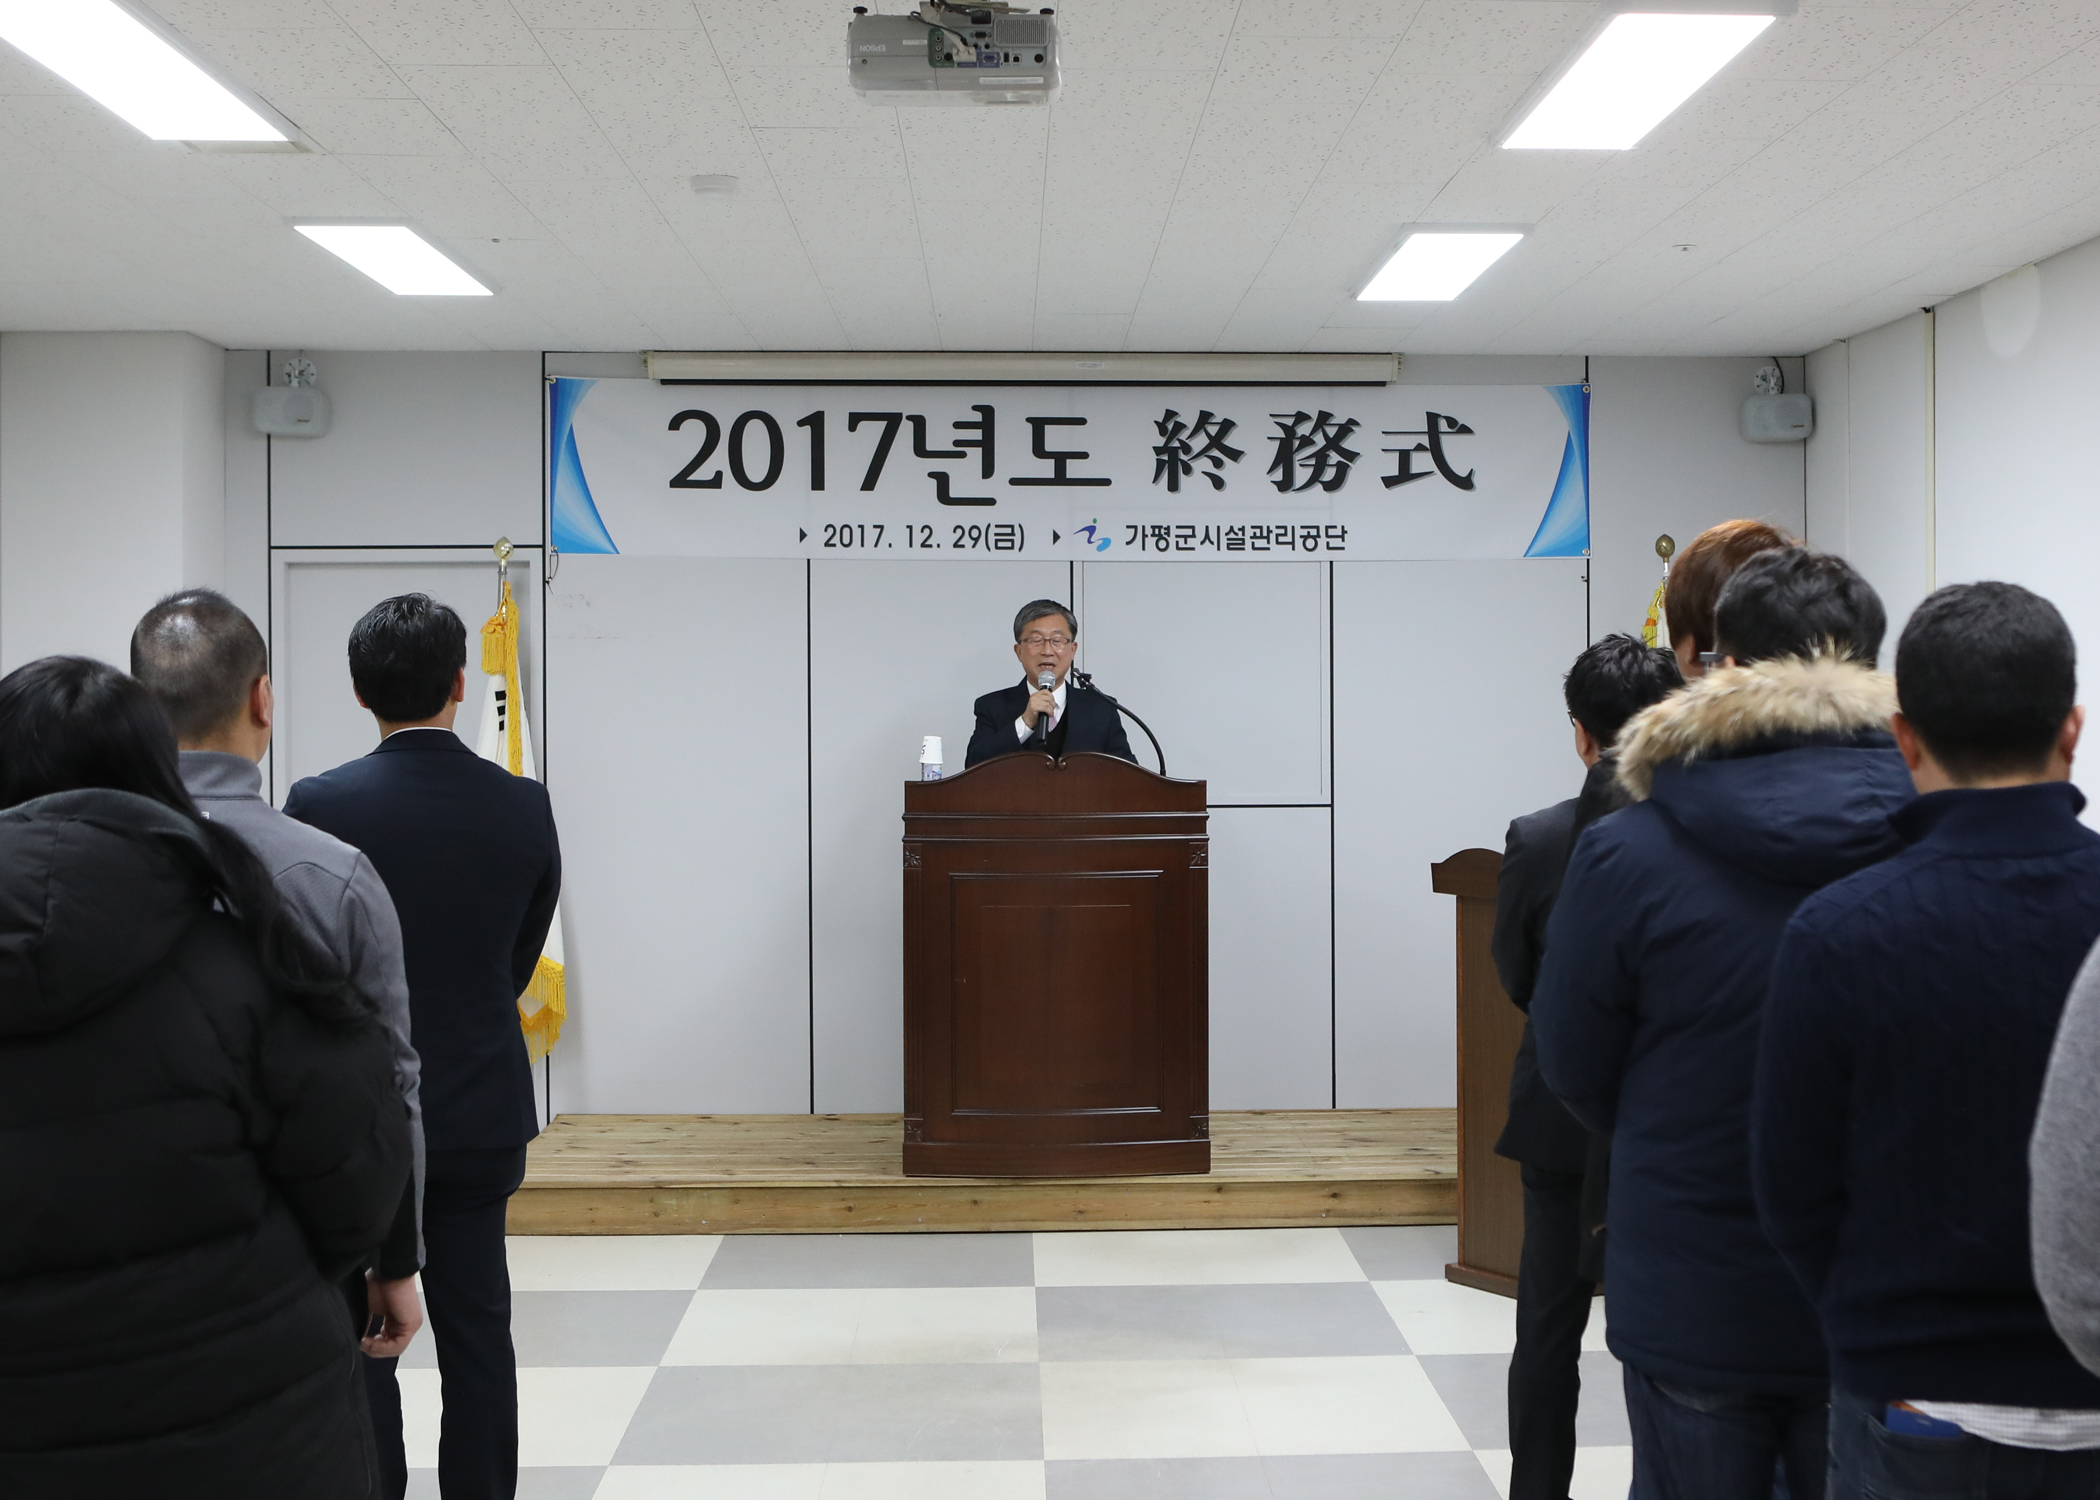  가평군시설관리공단 2017년 종무식 개최[2017.12.29.] 이미지